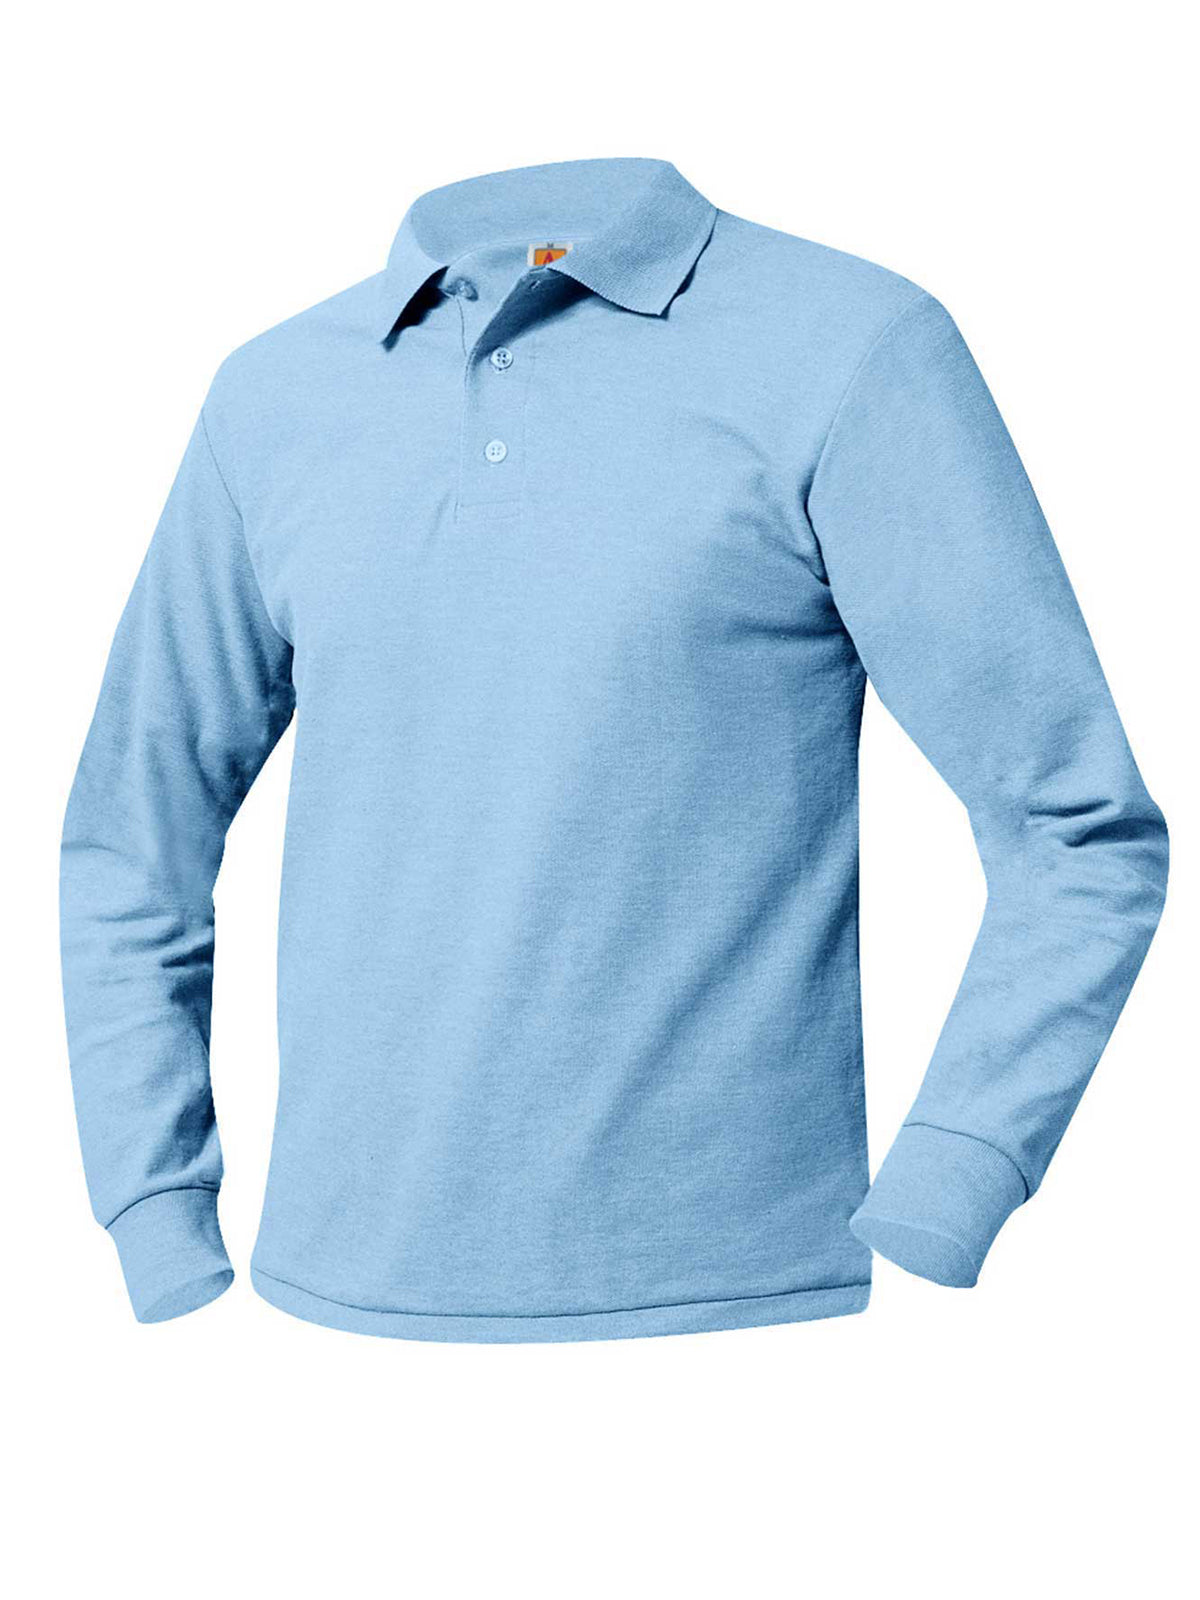 Unisex Long Sleeve Knit Shirt - 8766 - Light Blue